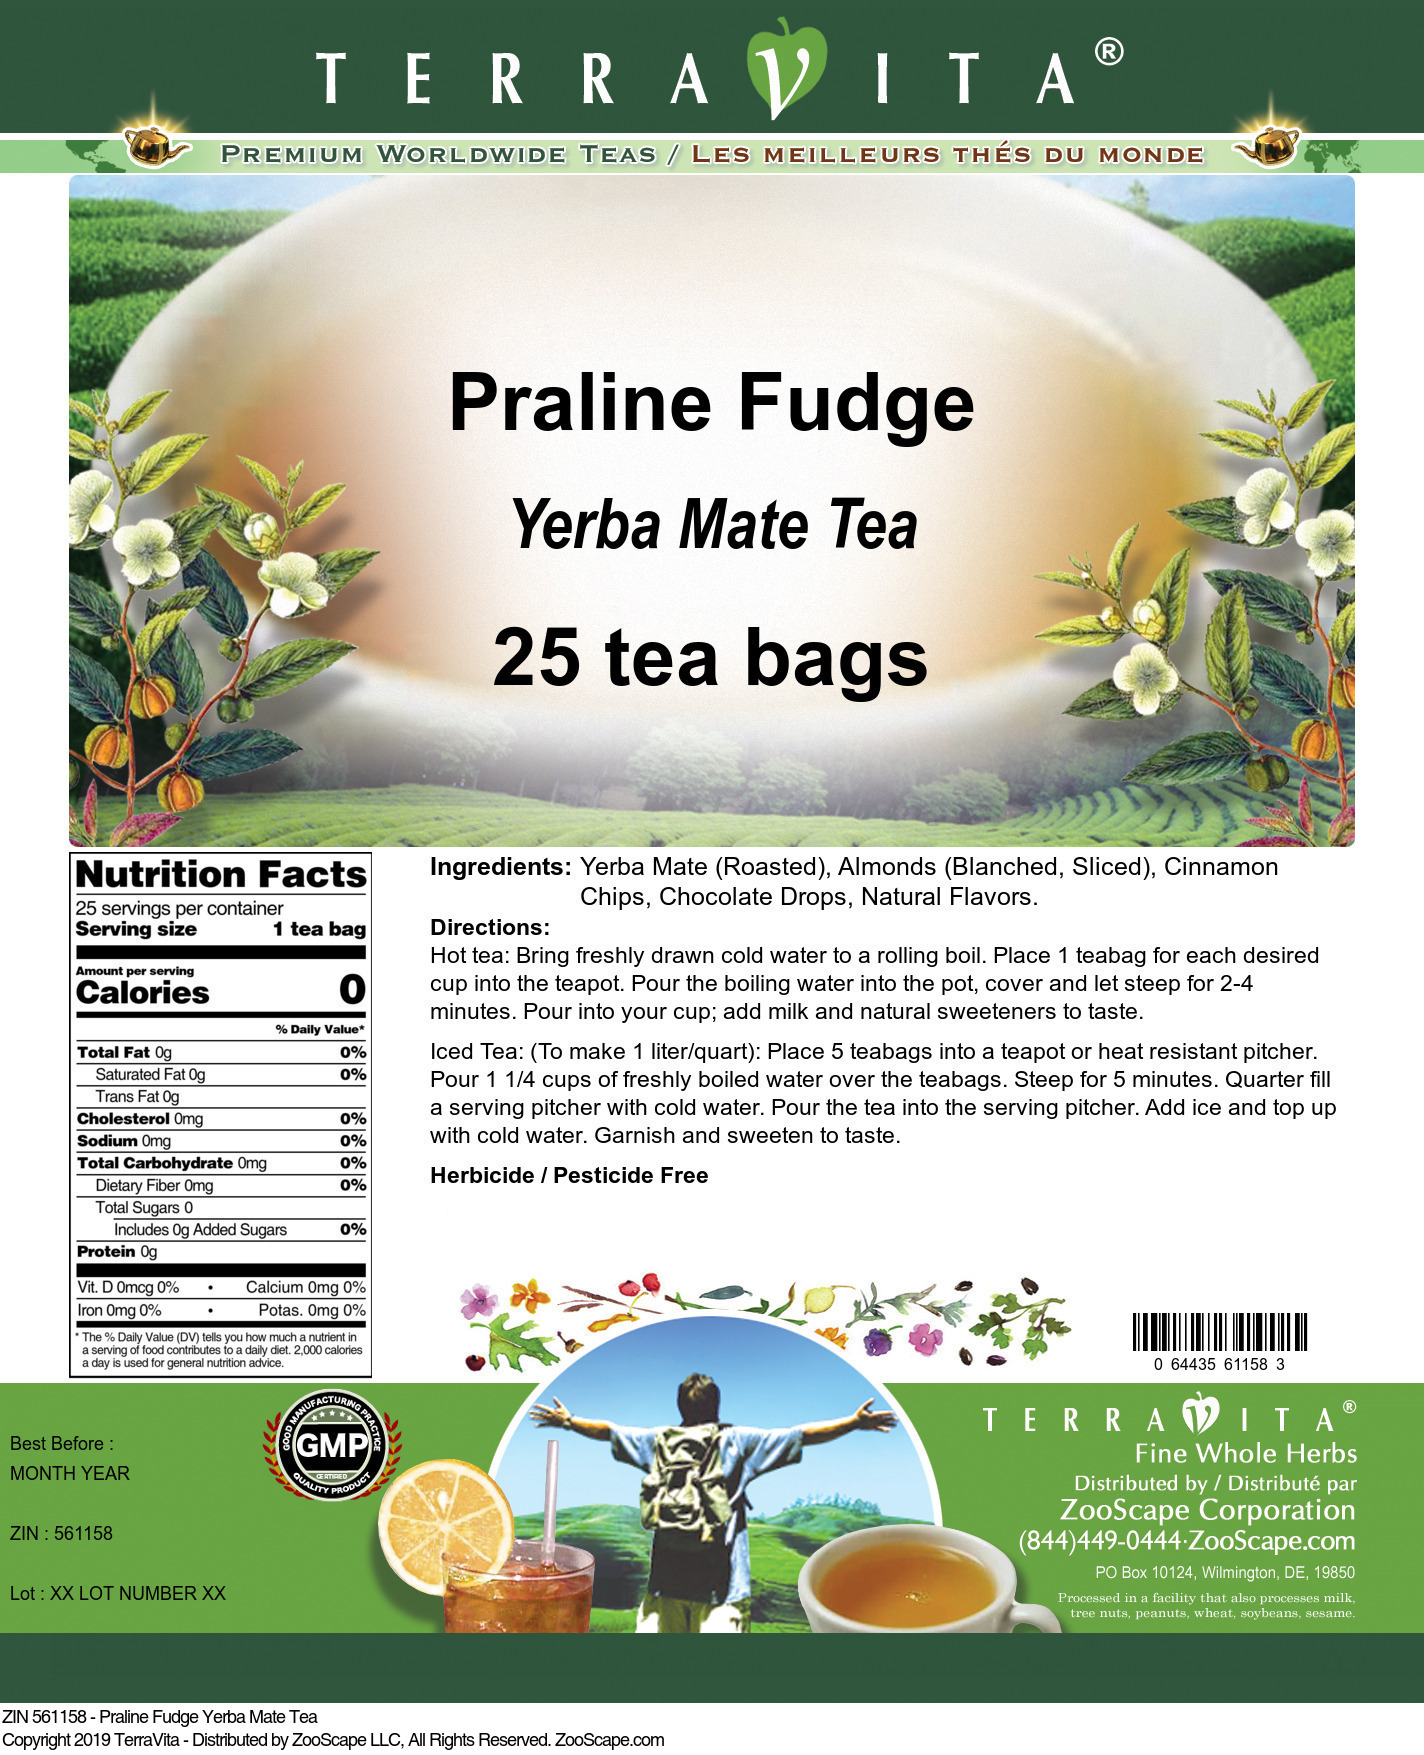 Praline Fudge Yerba Mate Tea - Label